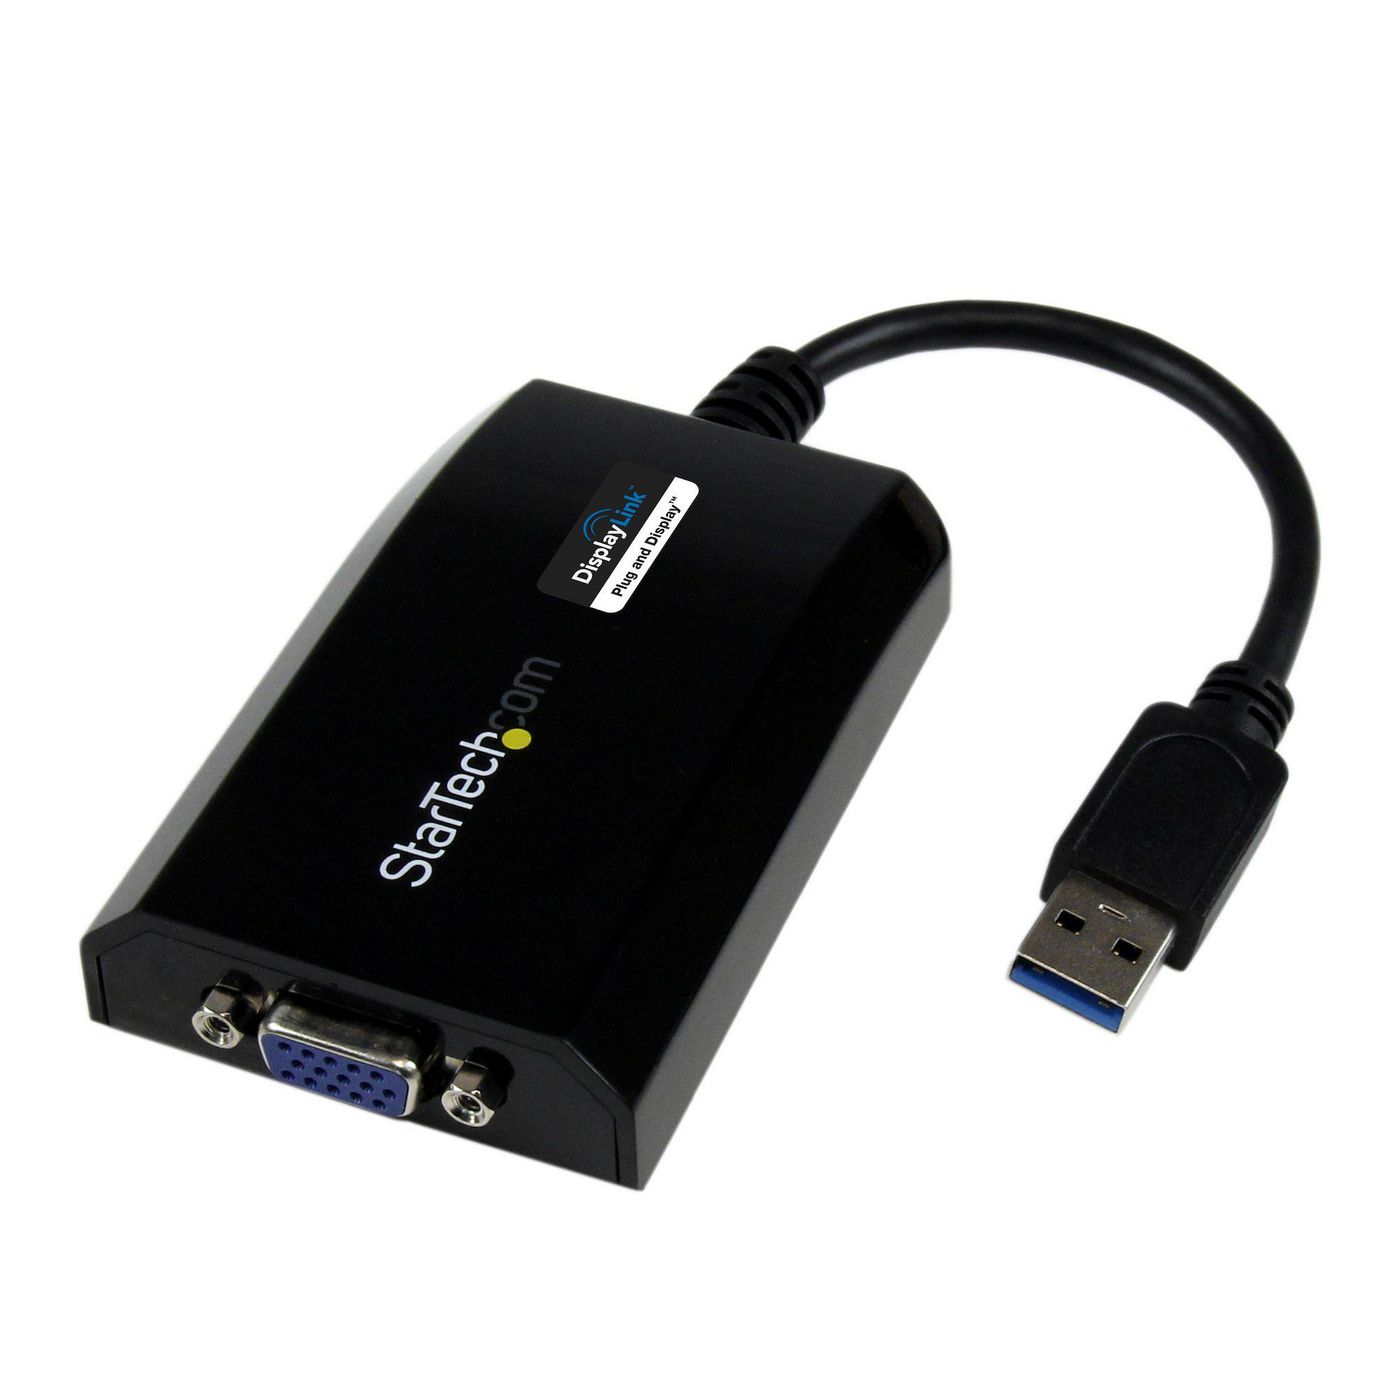 STARTECH.COM USB 3.0 auf VGA Video Adapter - Externe Multi Monitor Grafikkarte für PC und MAC